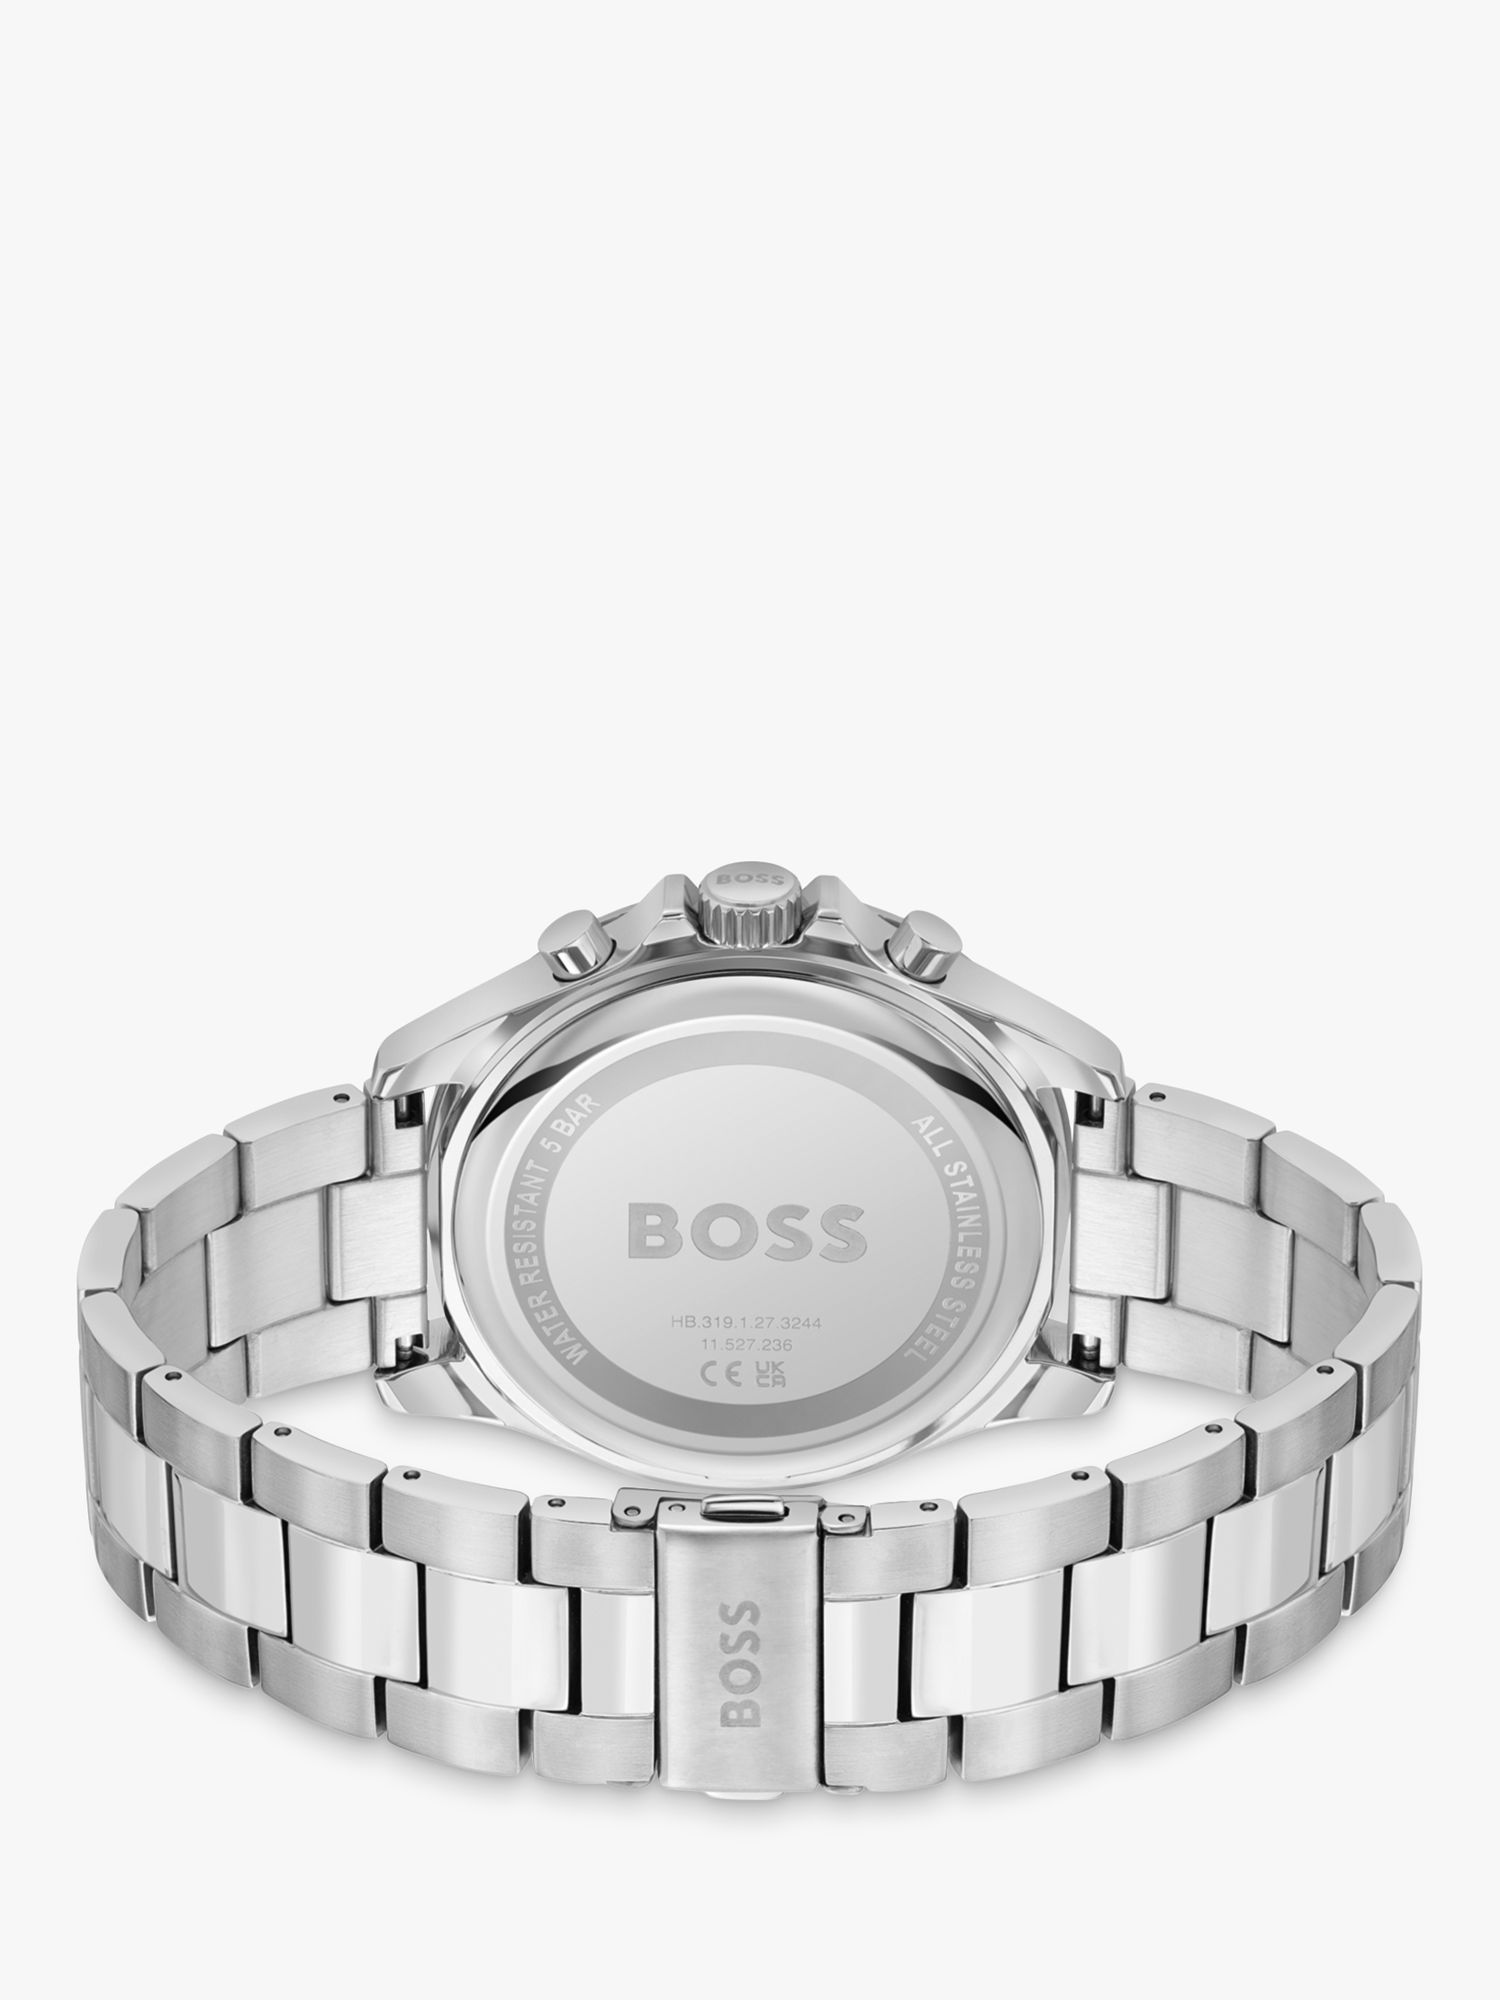 BOSS Men's Troper Chronograph Bracelet Strap Watch, Silver/Black 1514108